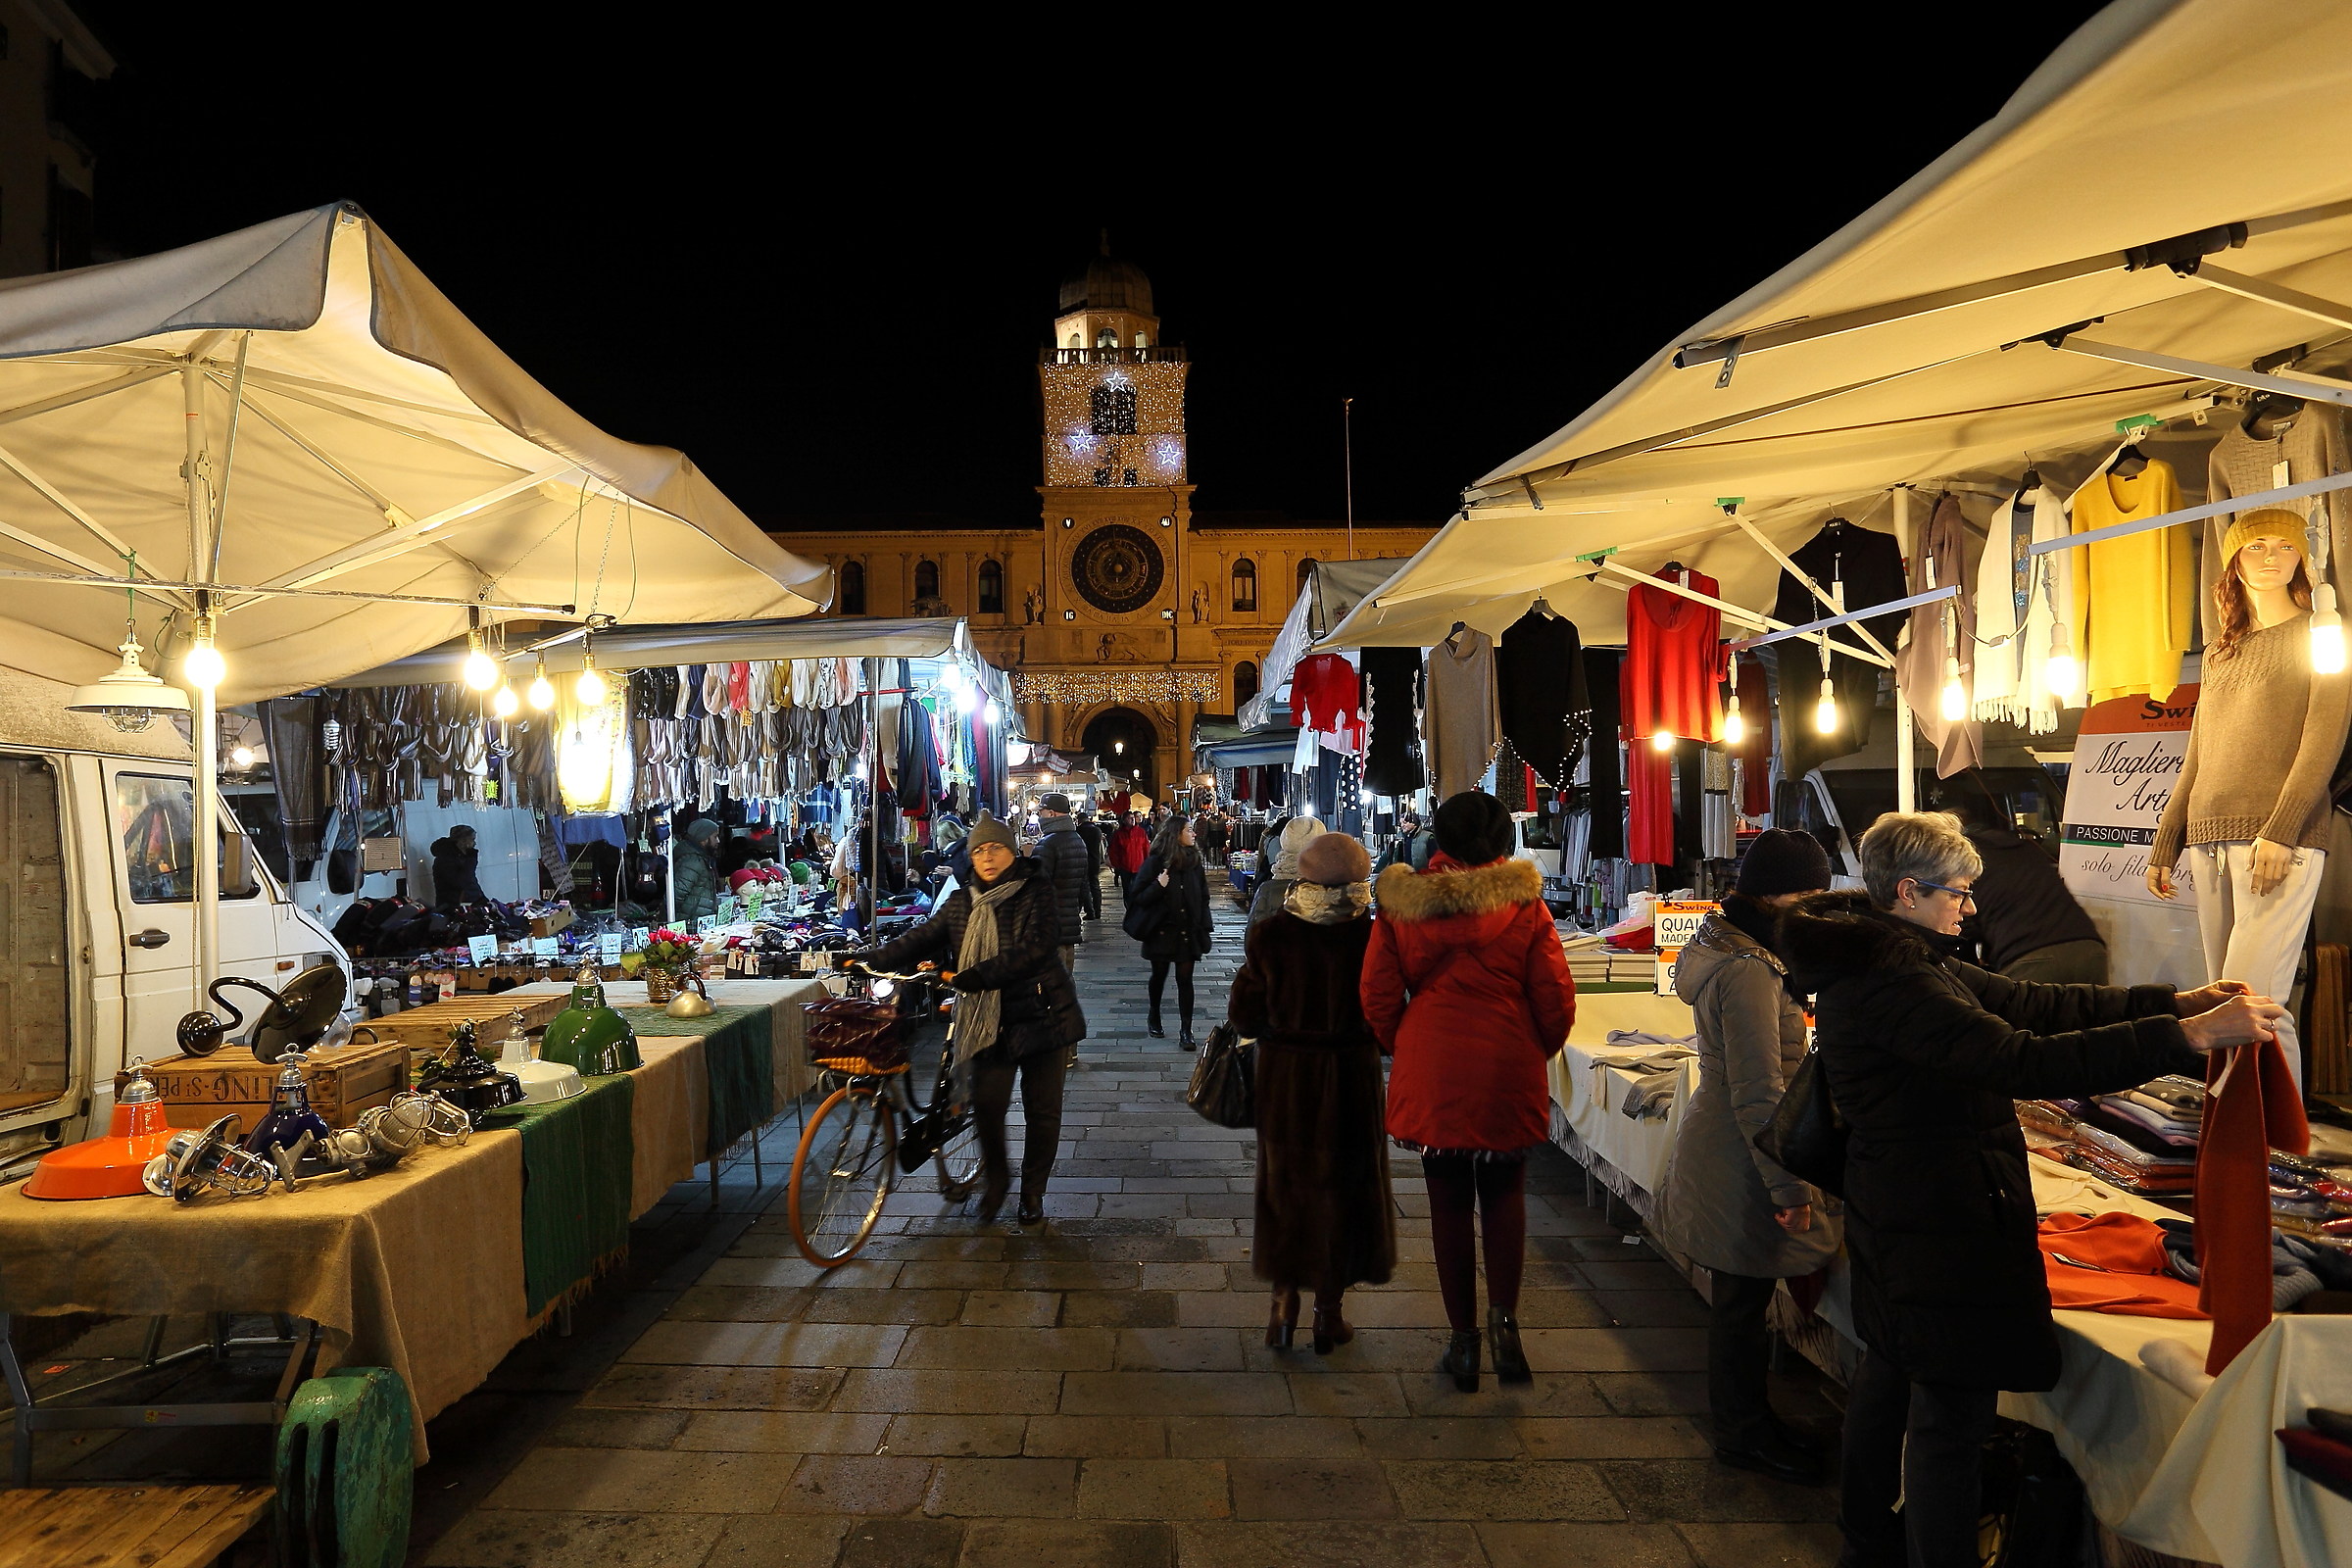 Struscio and flea market in Piazza dei Signori...